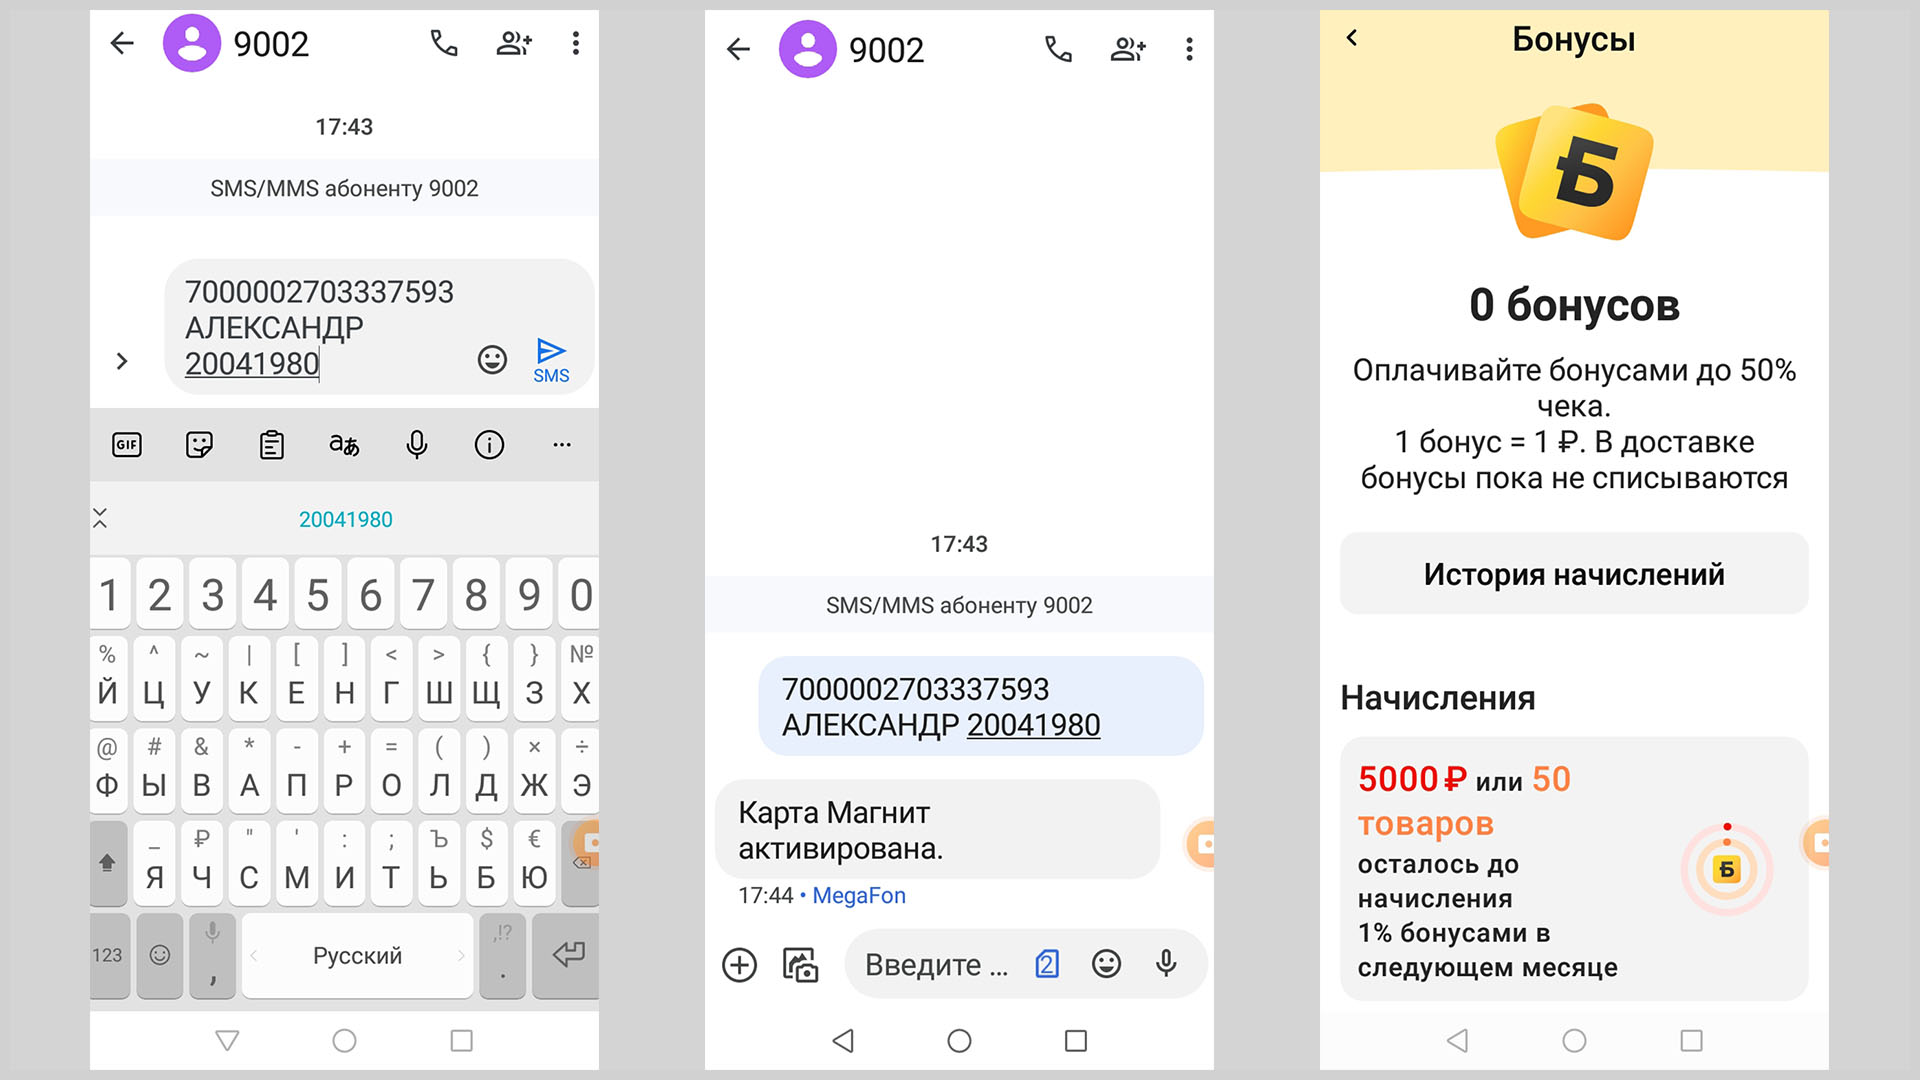 Скриншот экрана смартфона с примером СМС активации карты и ответным СМС.